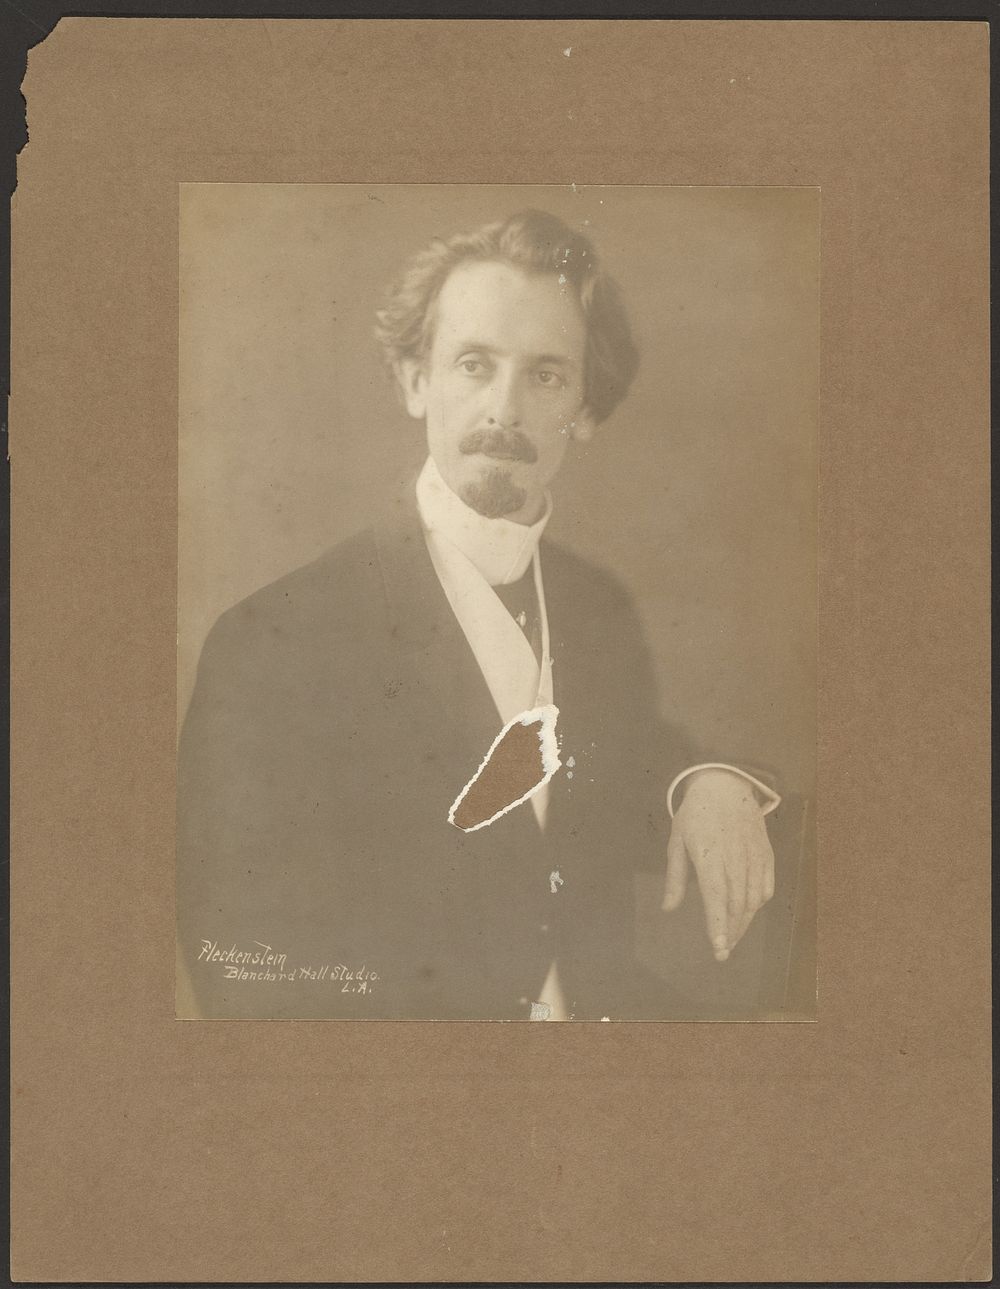 Portrait of a Man with Round Collar by Louis Fleckenstein